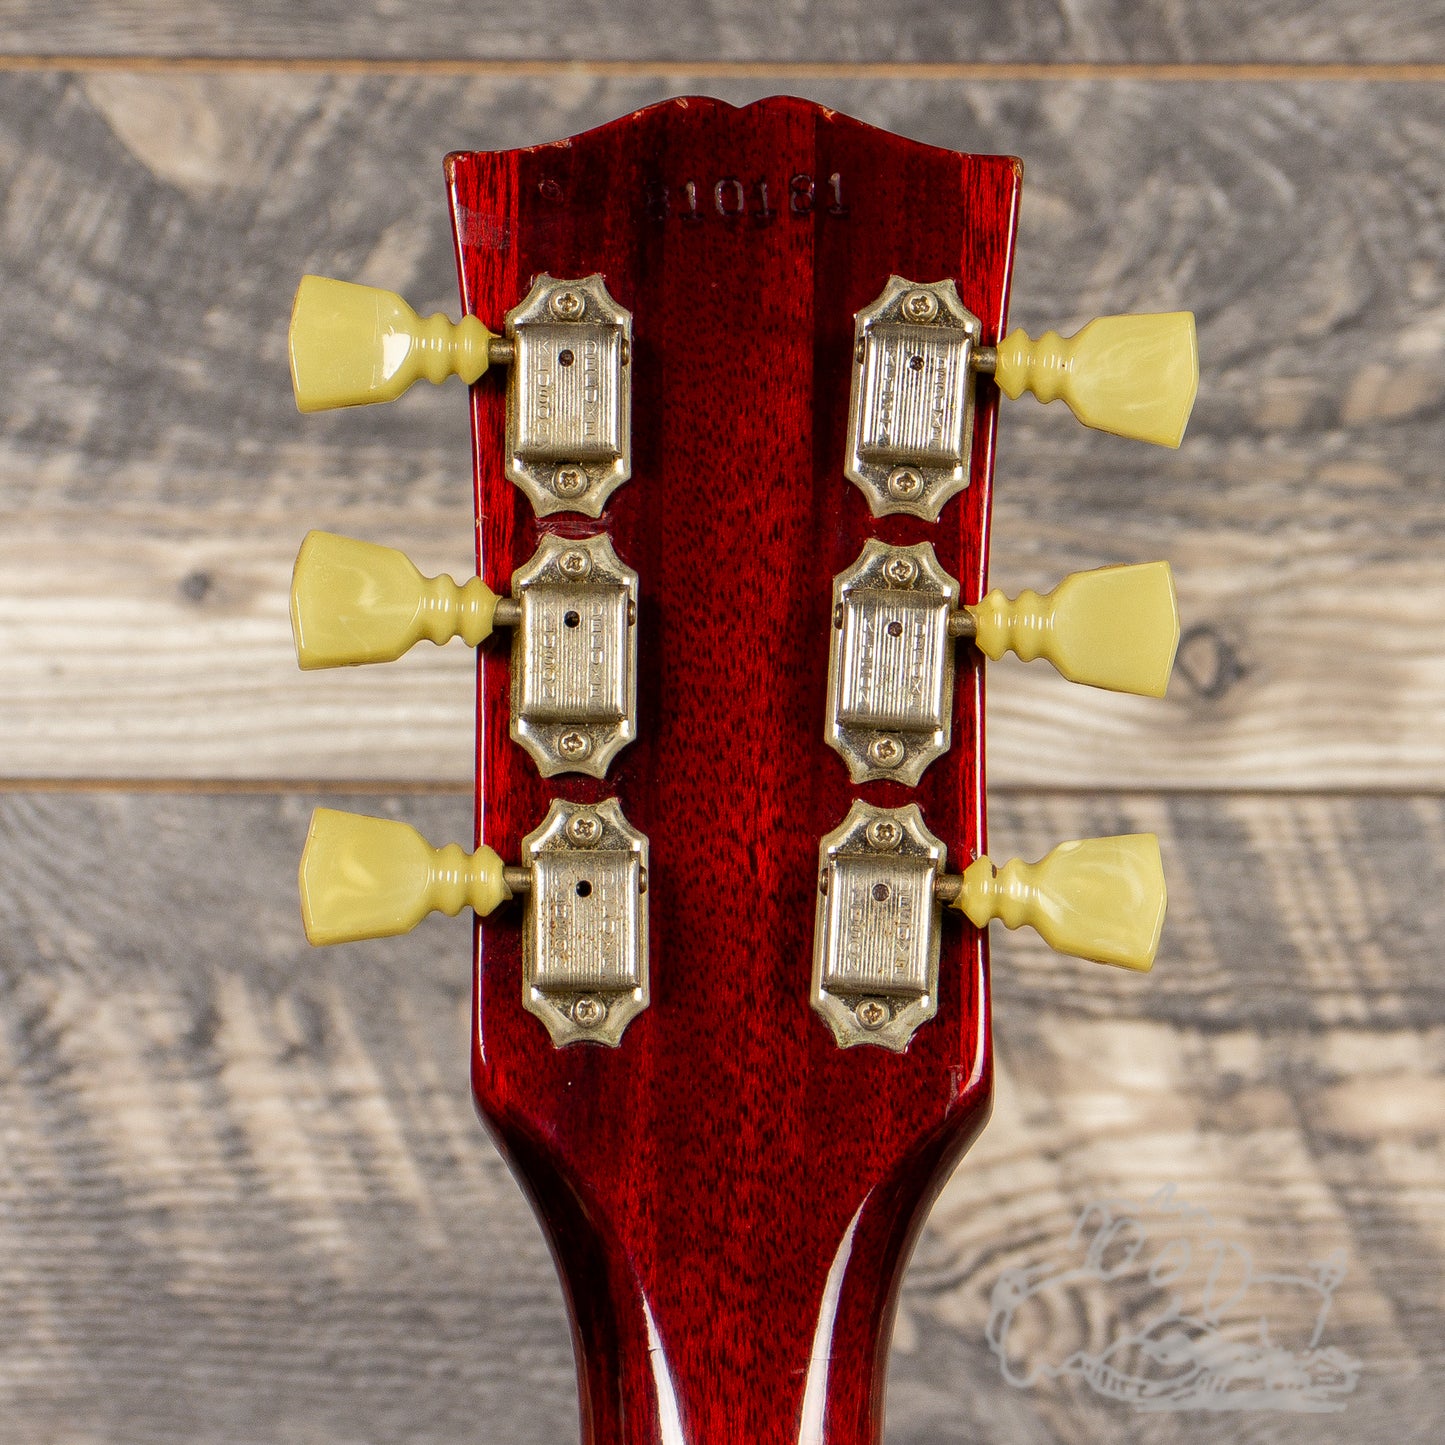 1968 Gibson SG Standard